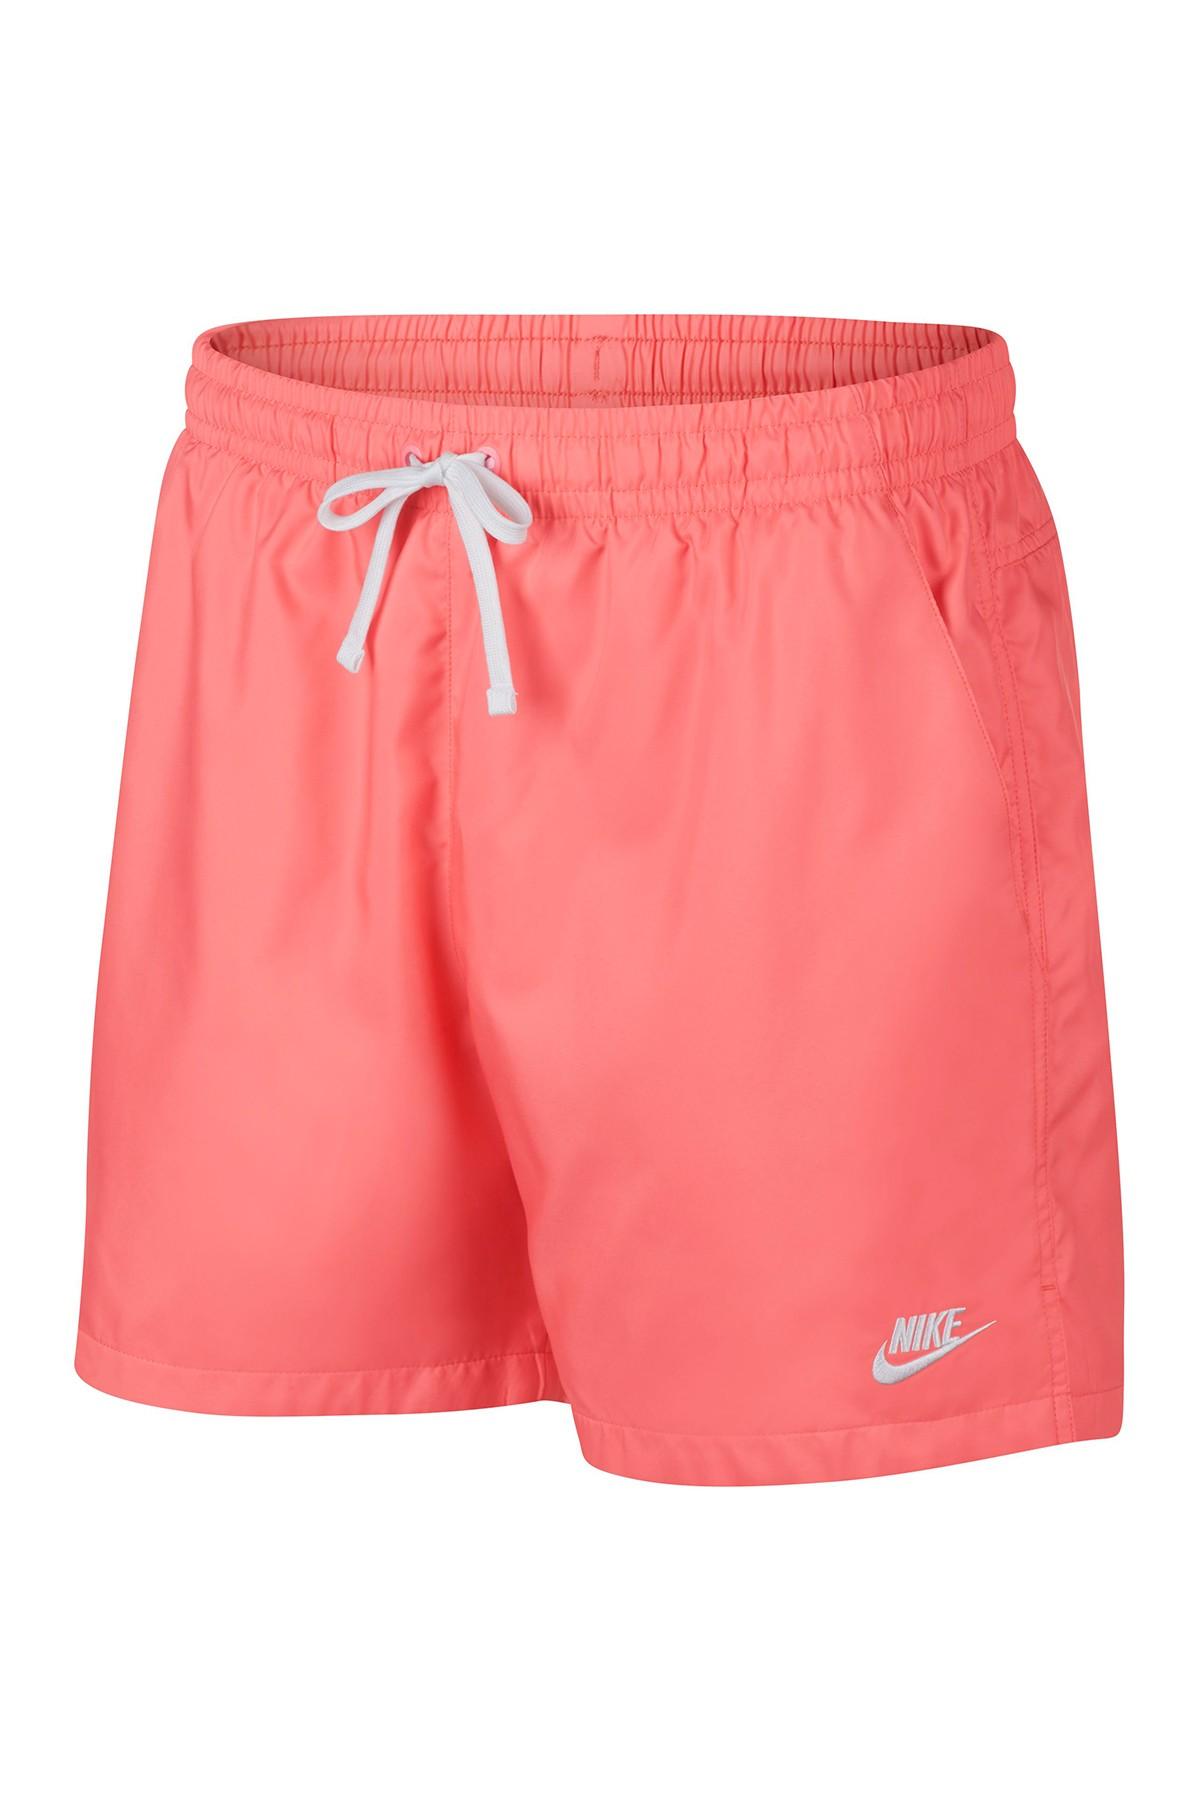 Nike Synthetic Sportswear Woven Shorts in Pink for Men - Lyst